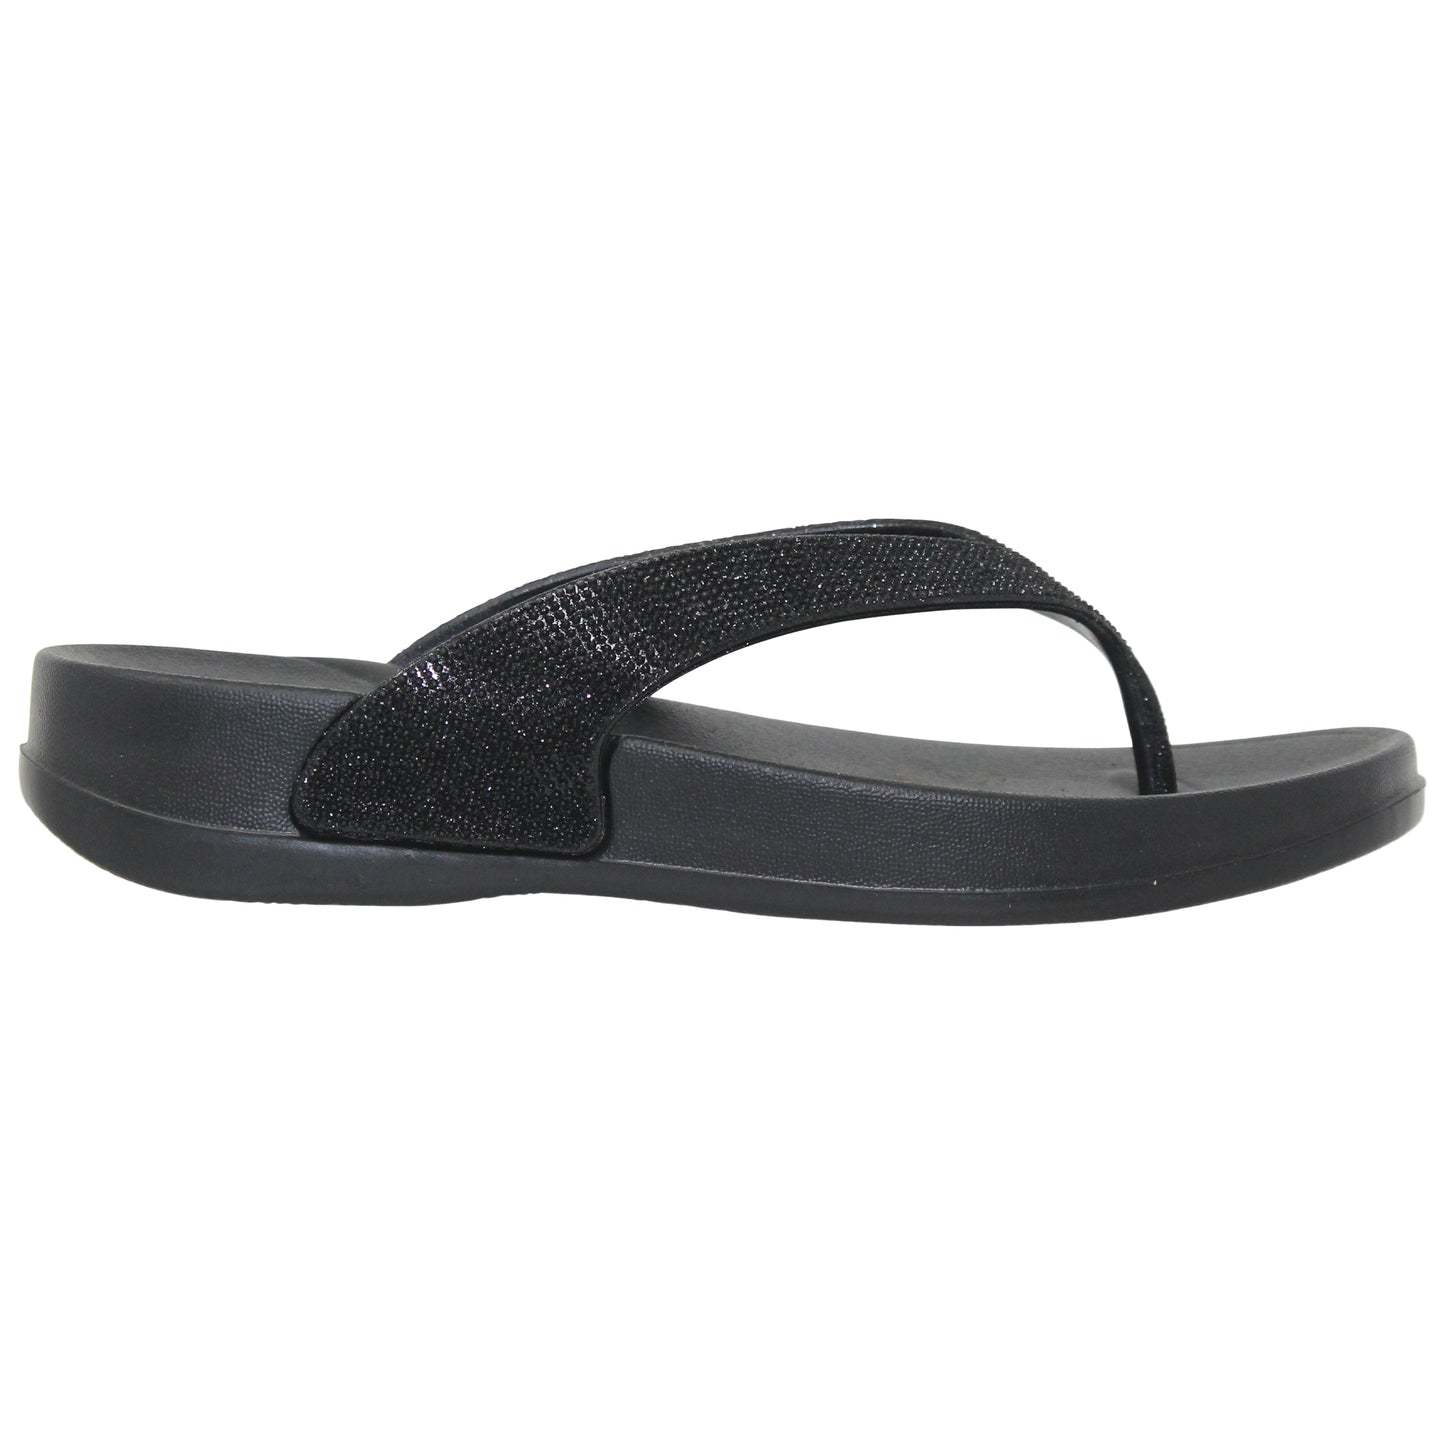 SOBEYO Womens Flat Platform Sandals Light-Weight Glitter Flip Flop Thong Black